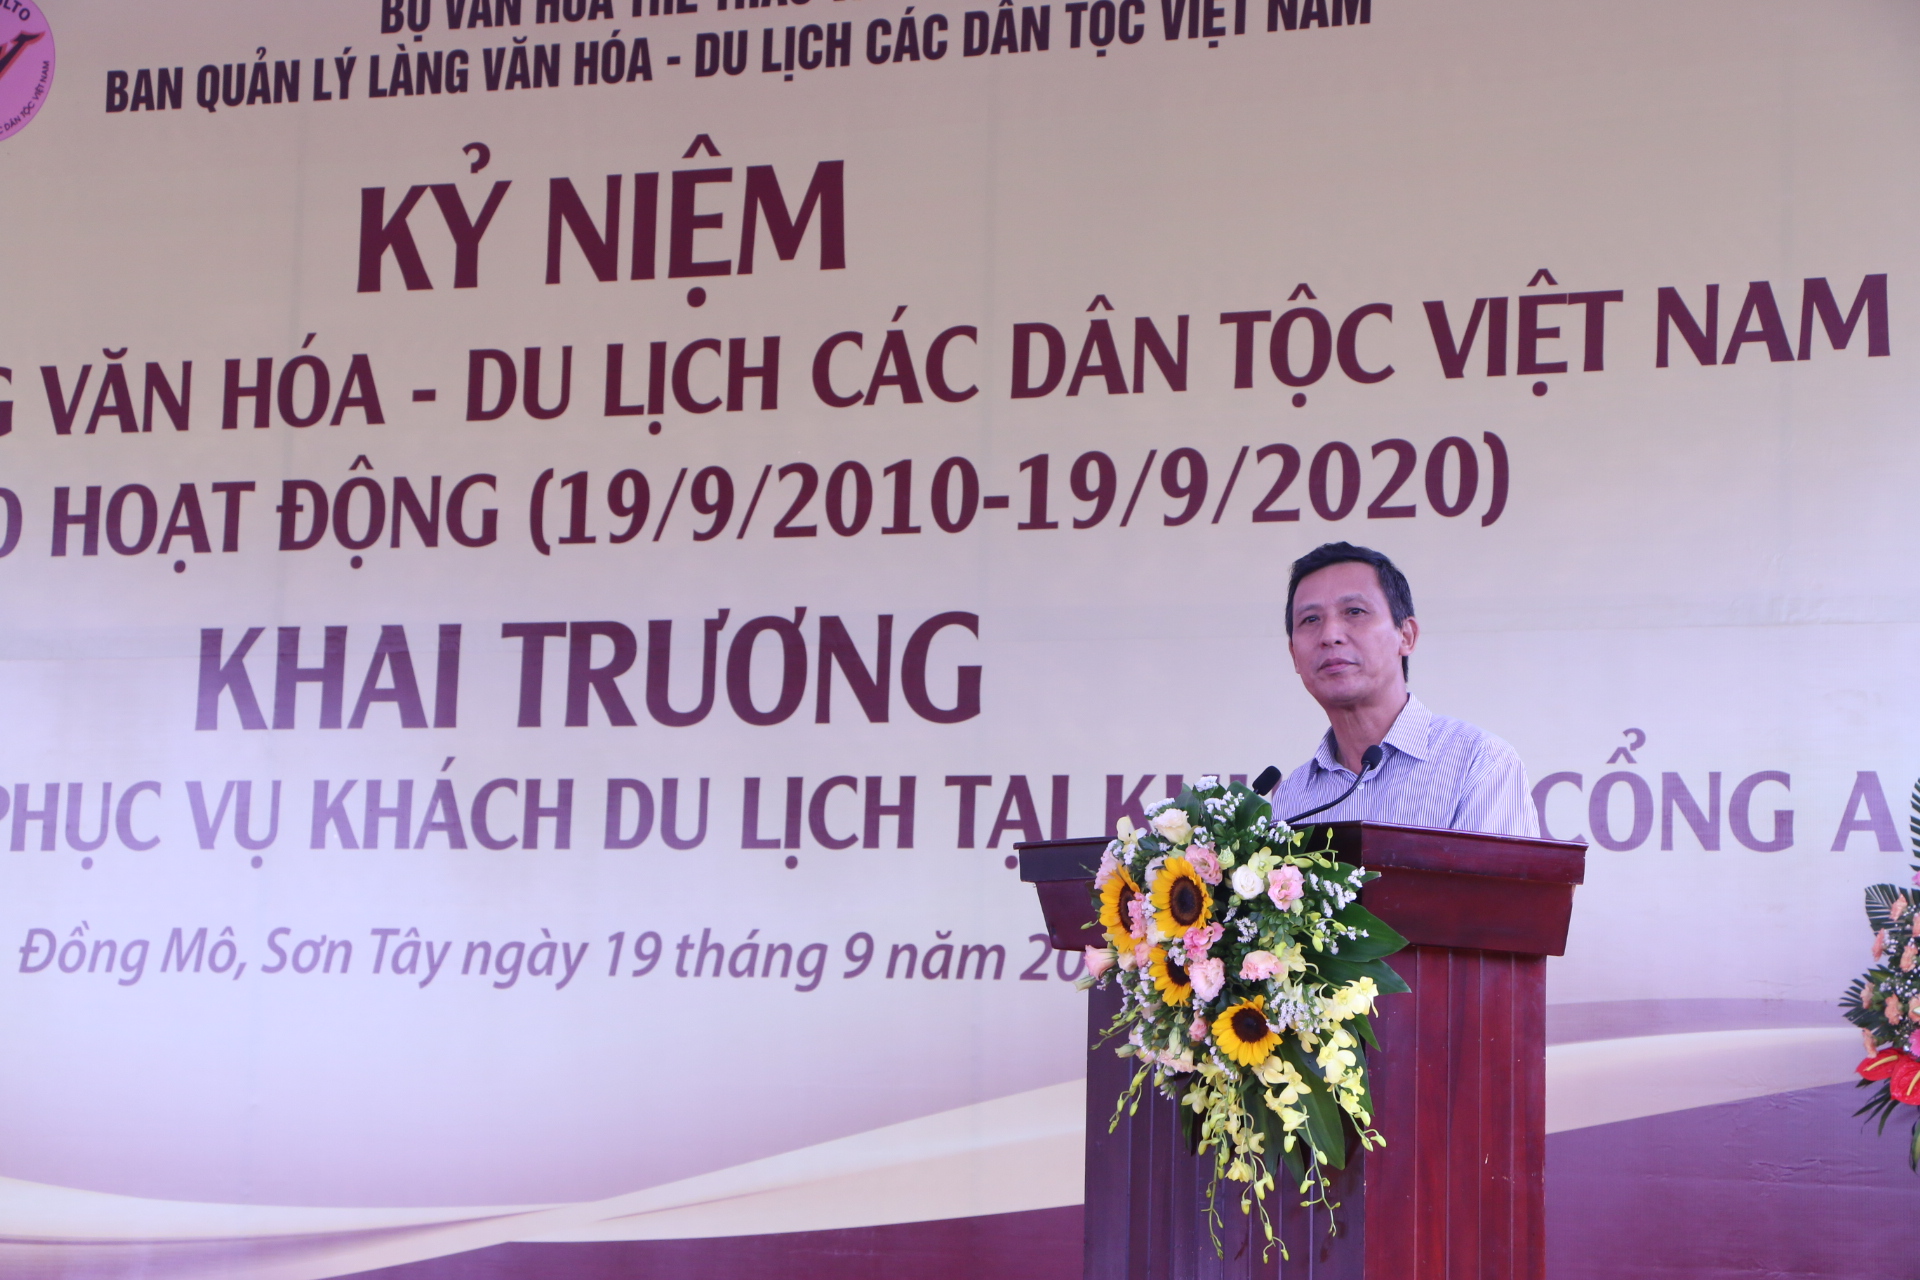 Ông Lâm Văn Khang, Nguyên Phó trưởng ban BQL Làng Văn hóa - Du lịch các dân tộc Việt Nam chia sẻ tại buổi lễ